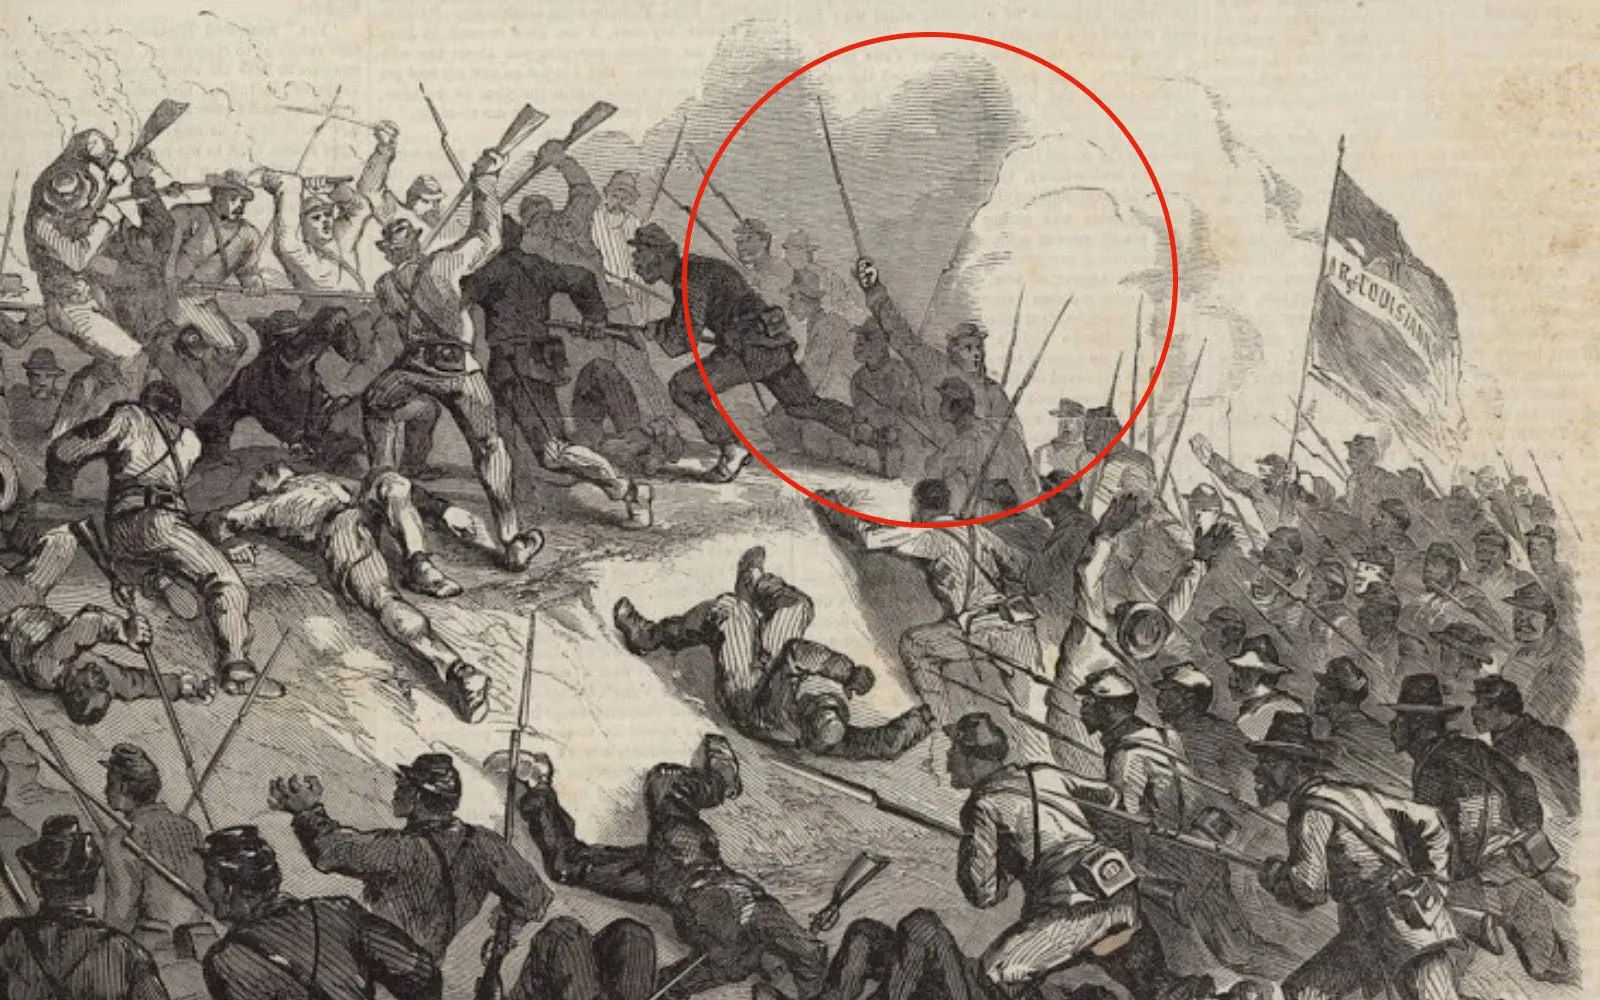 Representación de André Cailloux (dentro del círculo rojo) en batalla, sosteniendo su espada, antes de su muerte, 27 de mayo de 1863.?w=200&h=150